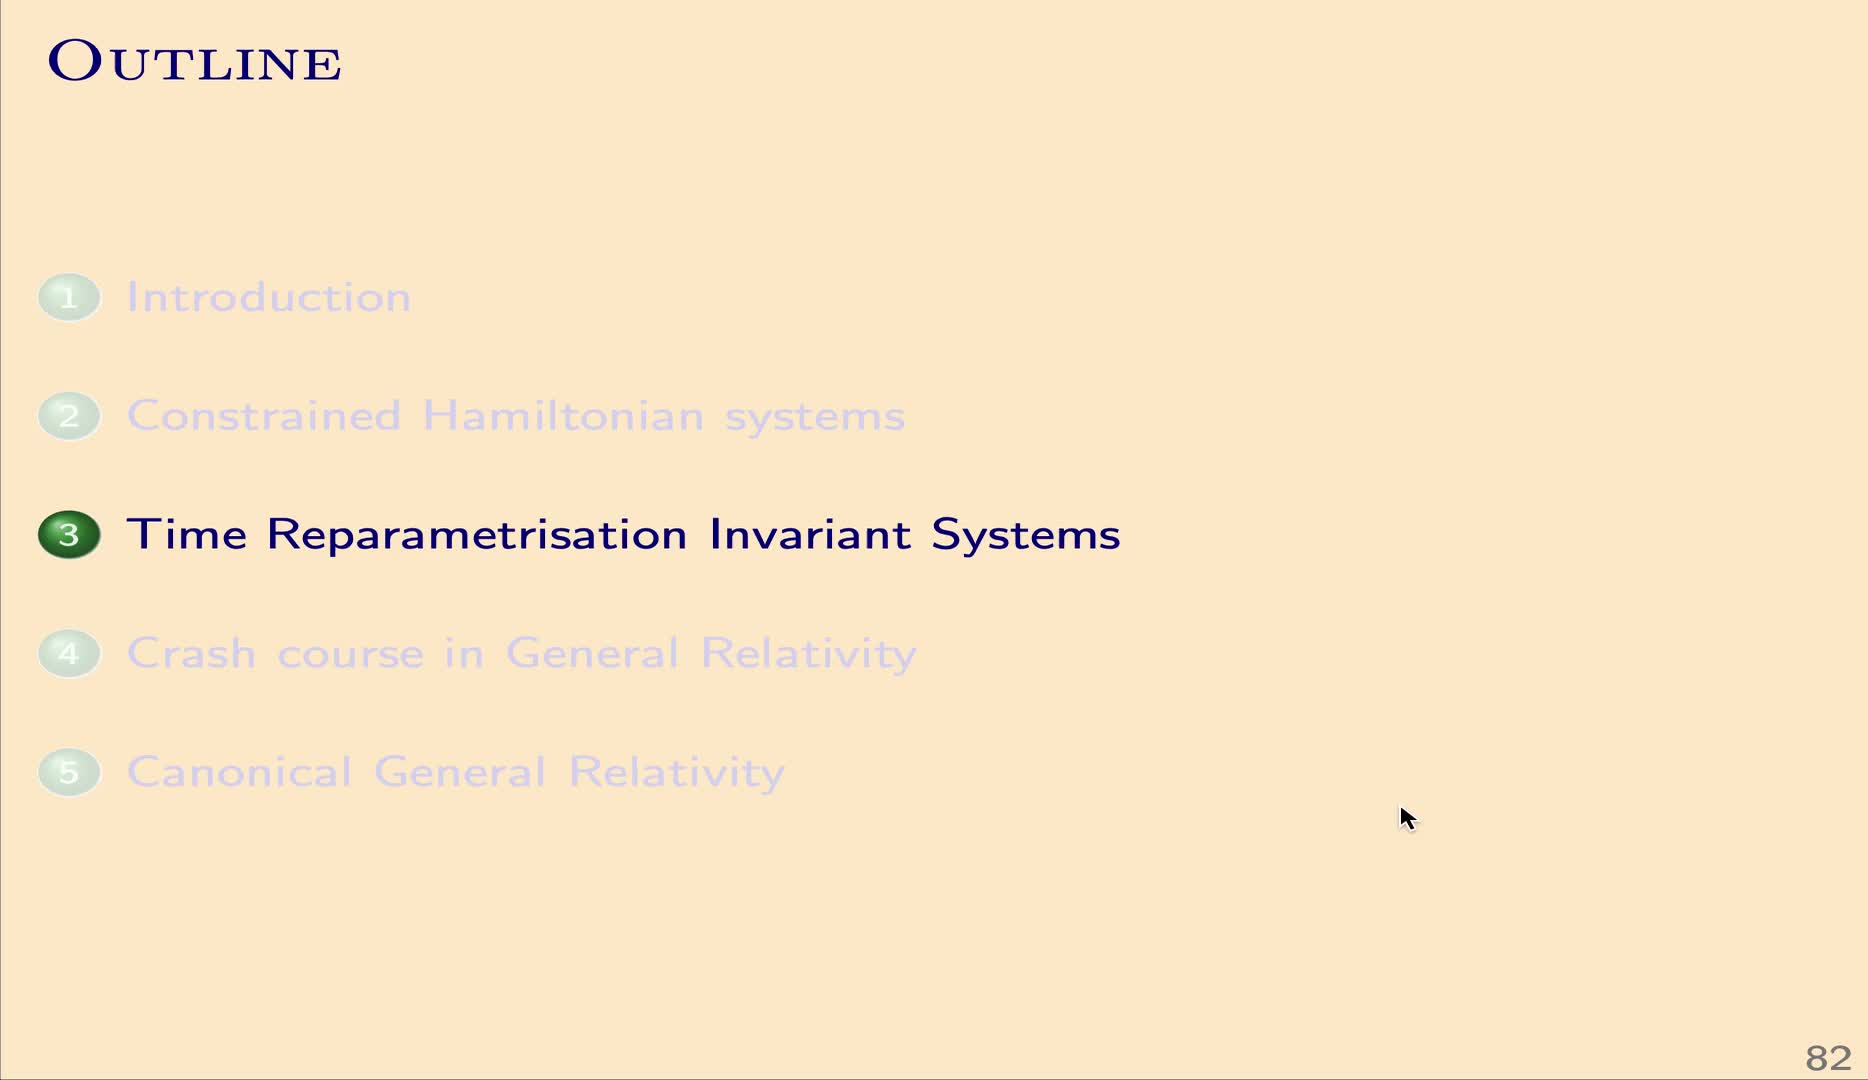 QG I: 3.1 - Parametrised systems